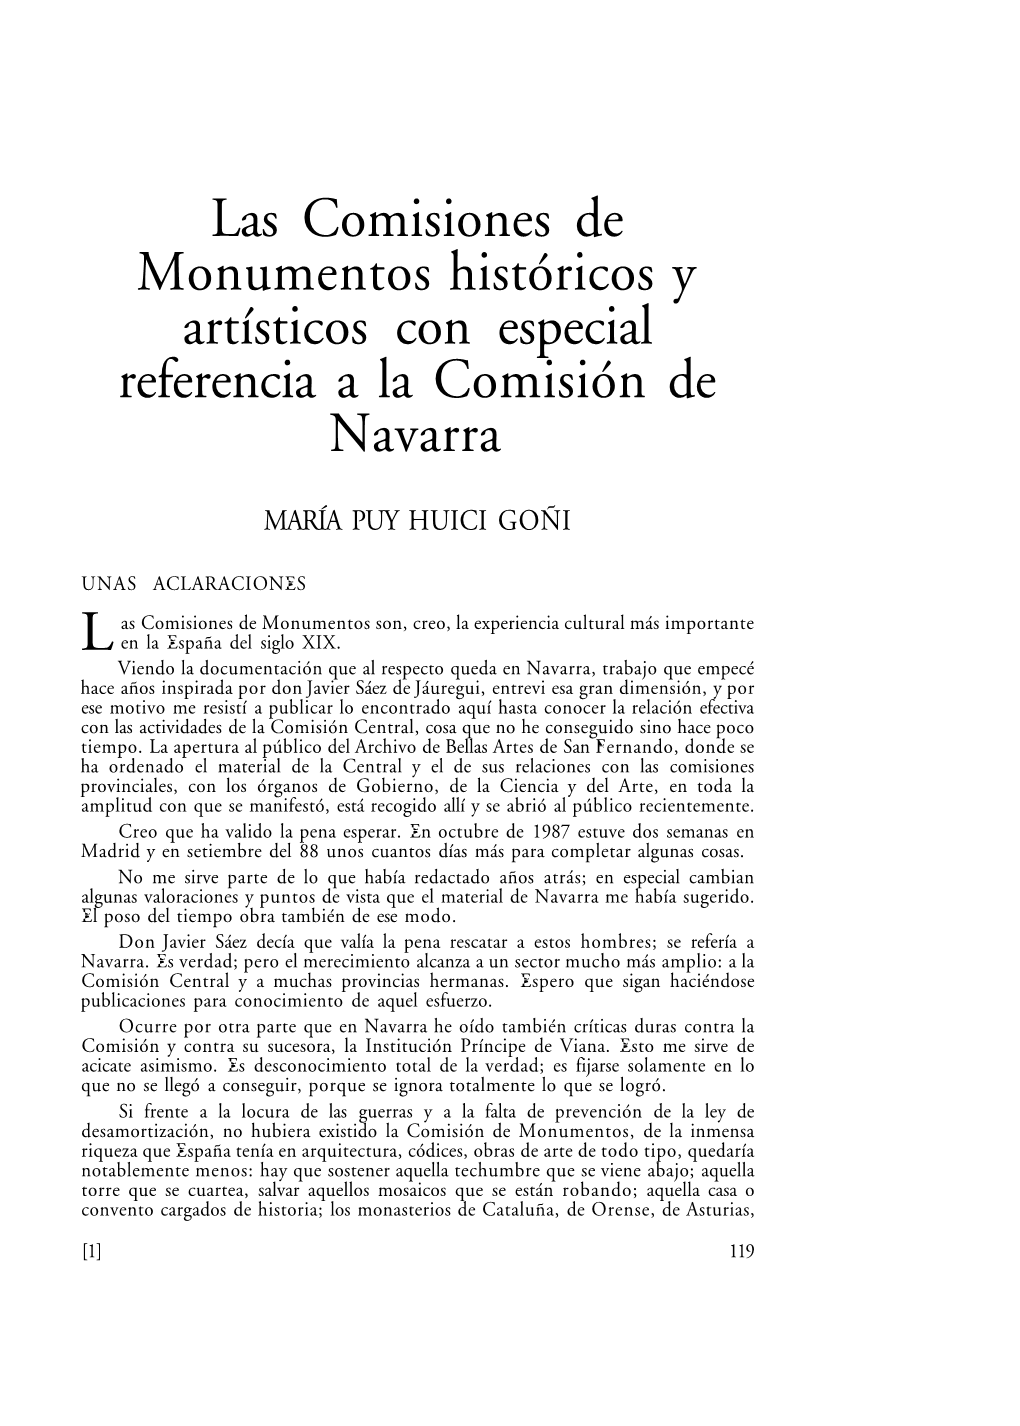 Las Comisiones De Monumentos Históricos Y Artísticos Con Especial Referencia a La Comisión De Navarra